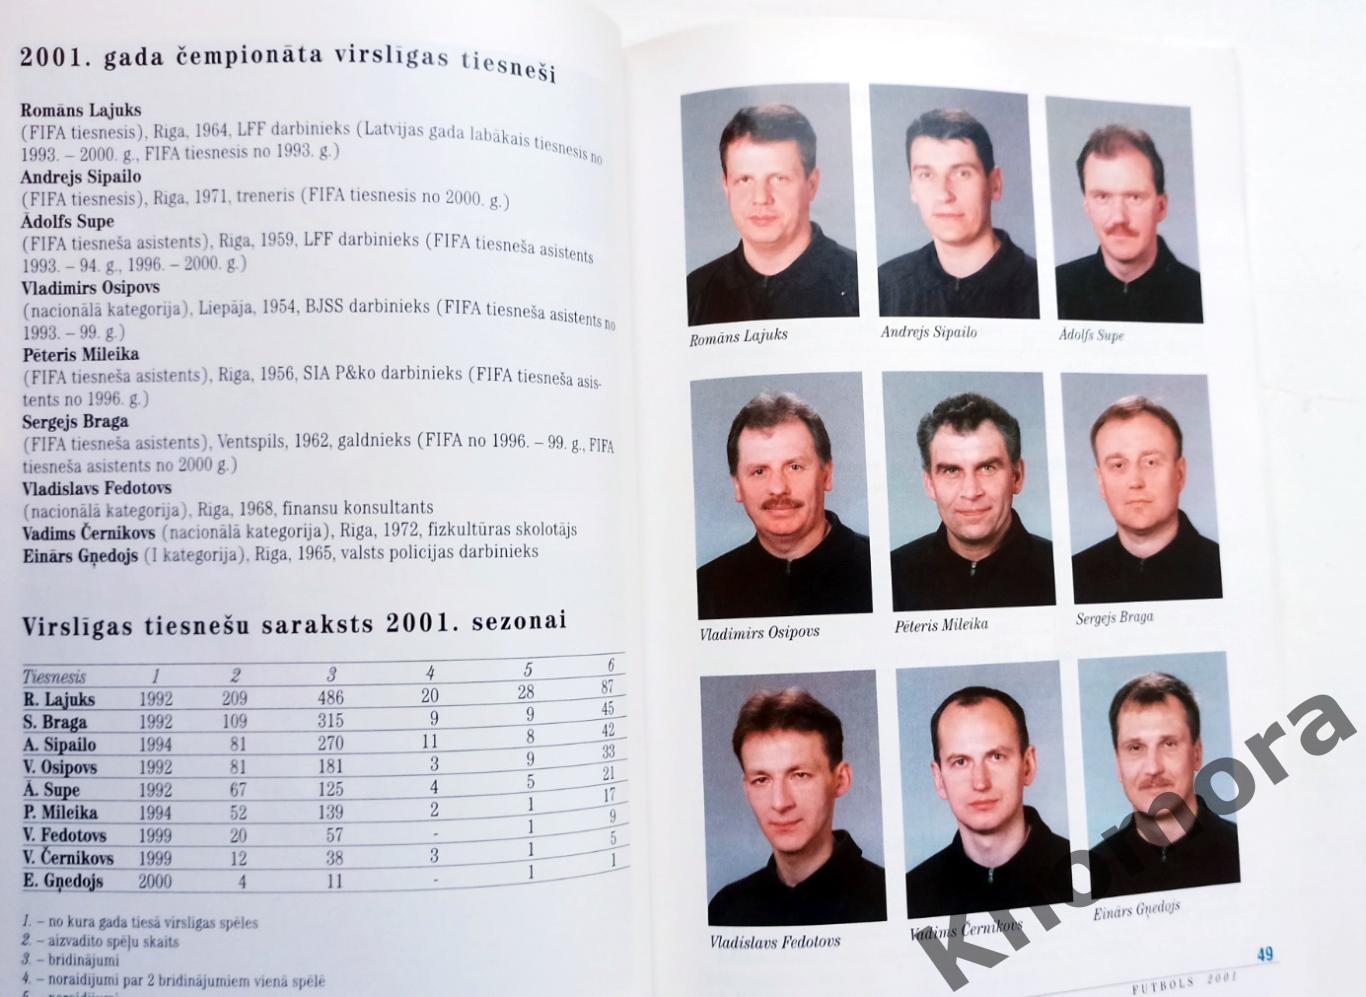 РЕДКИЙ! Рига-2001 Латвия - ежегодный календарь-справочник (96 страниц) 6